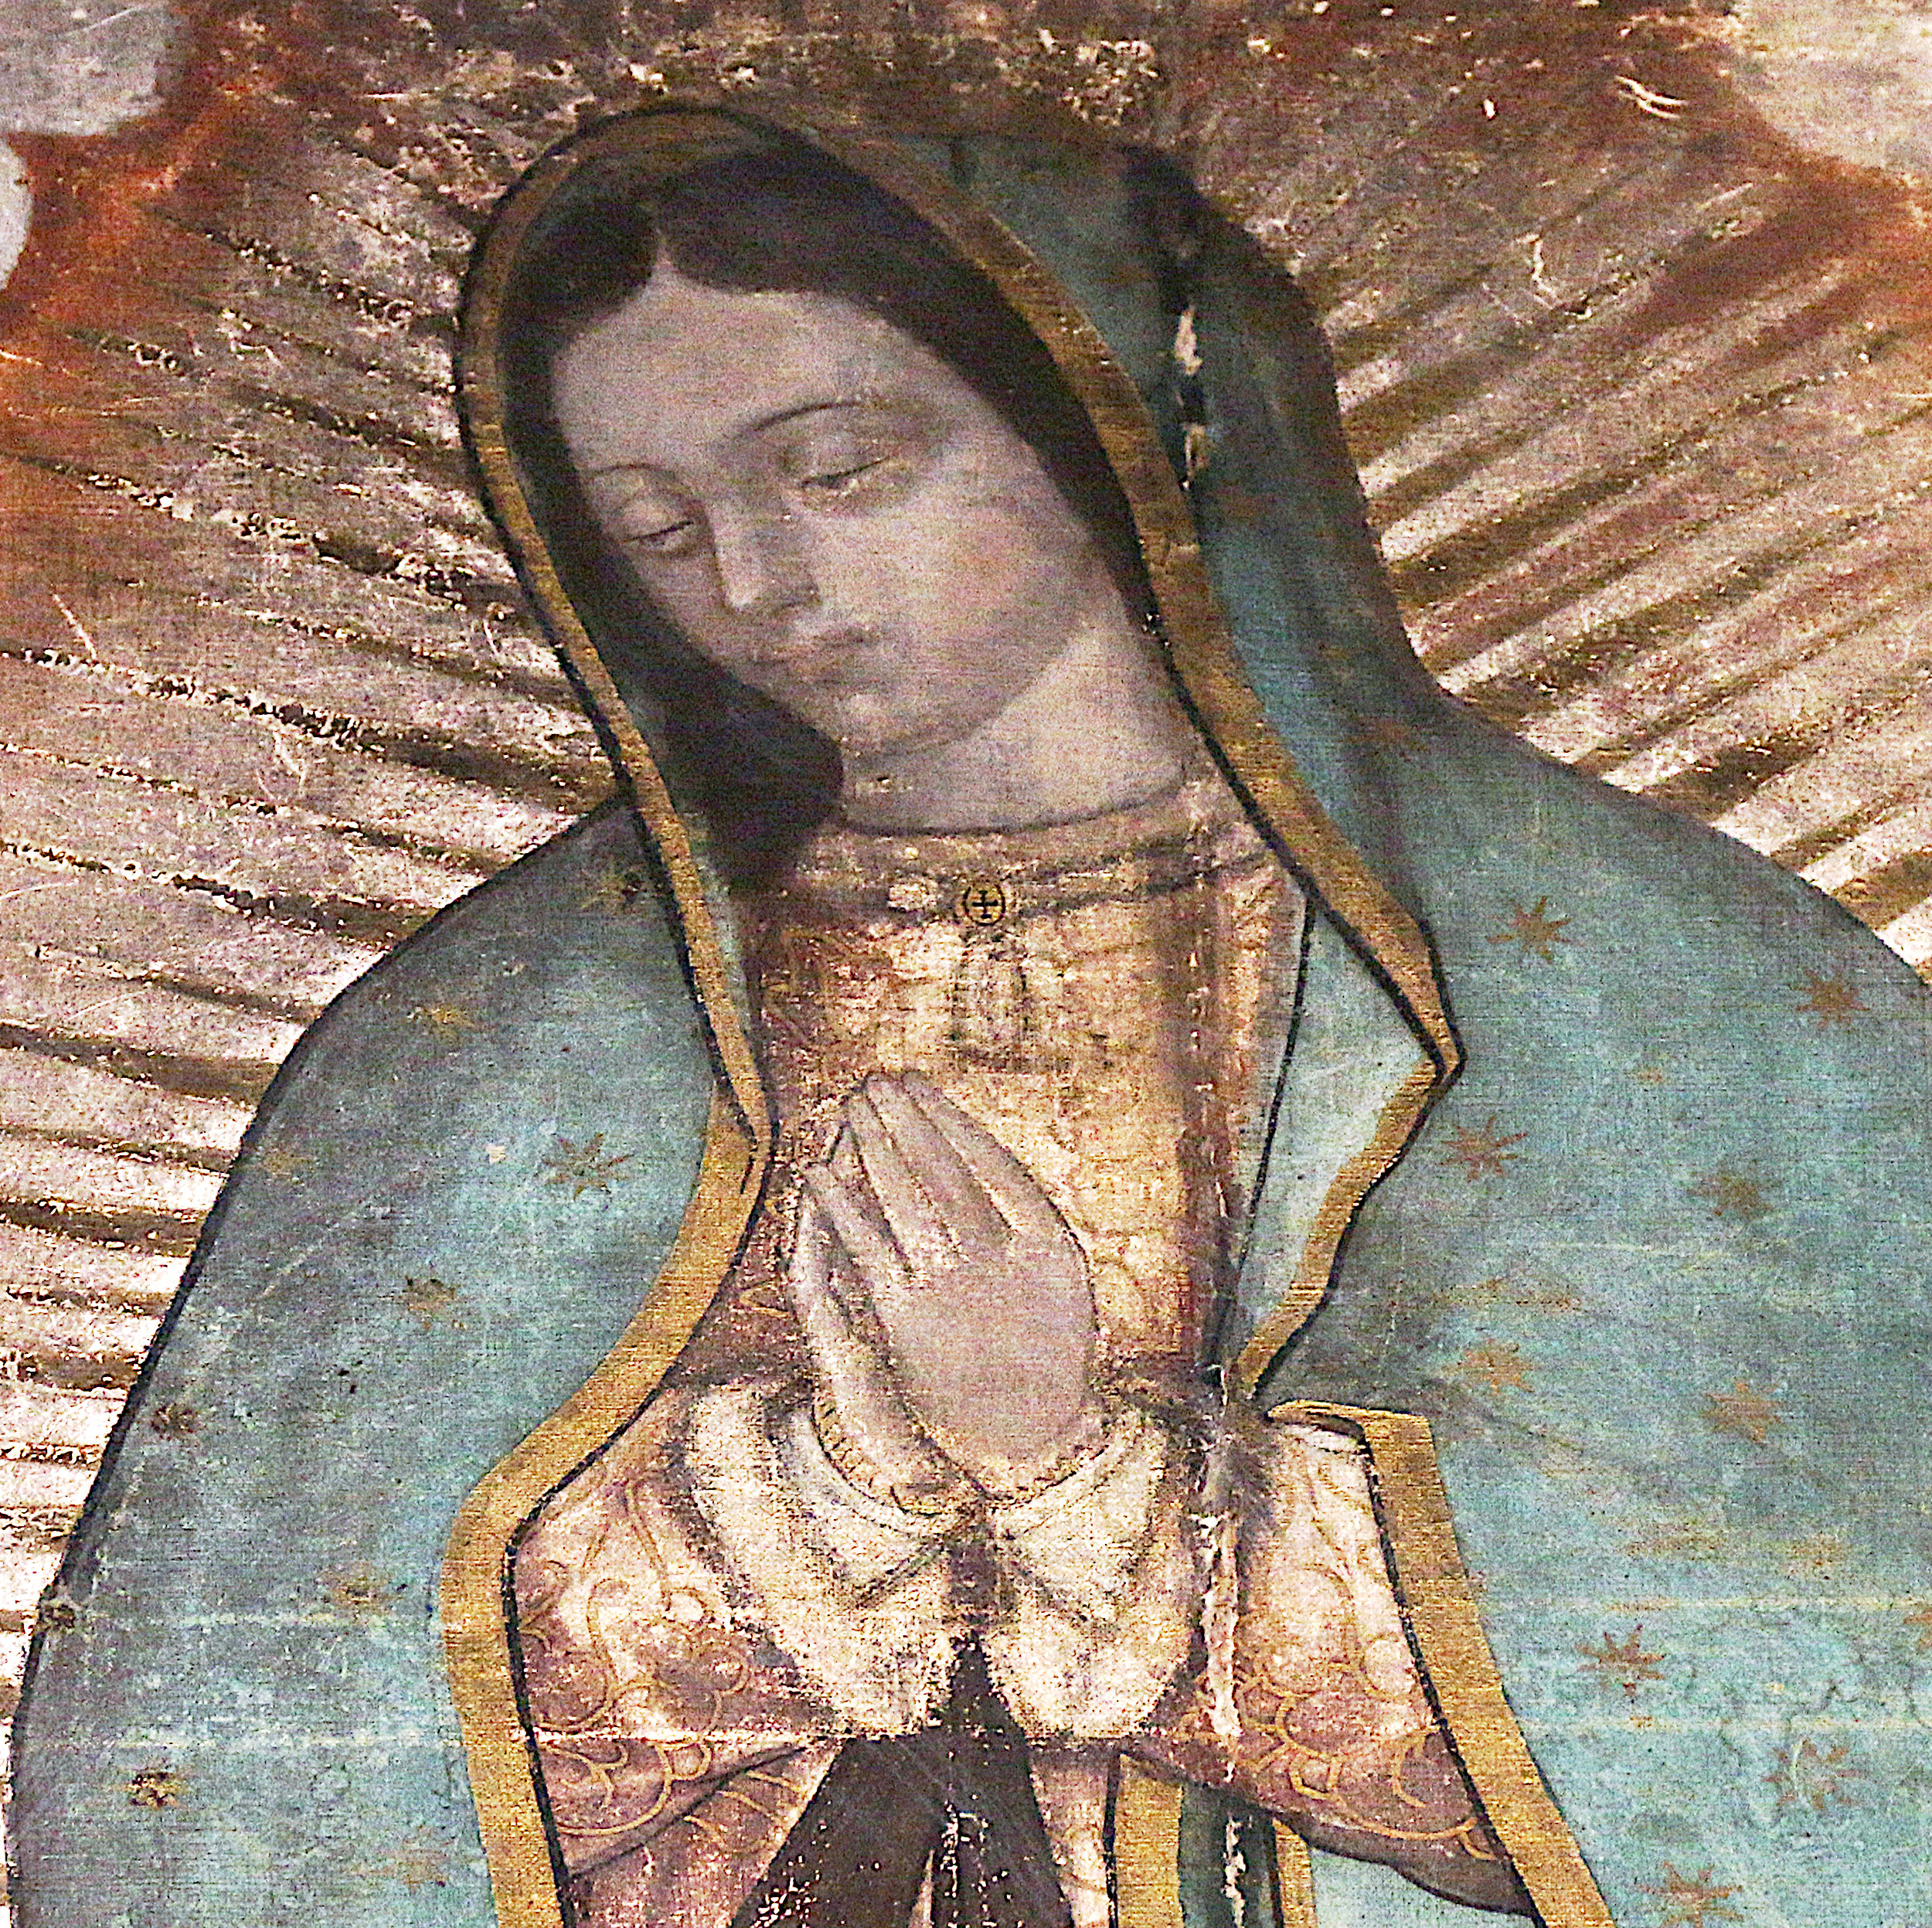 La musica nascosta nel mantello della Madonna di Guadalupe, tilma